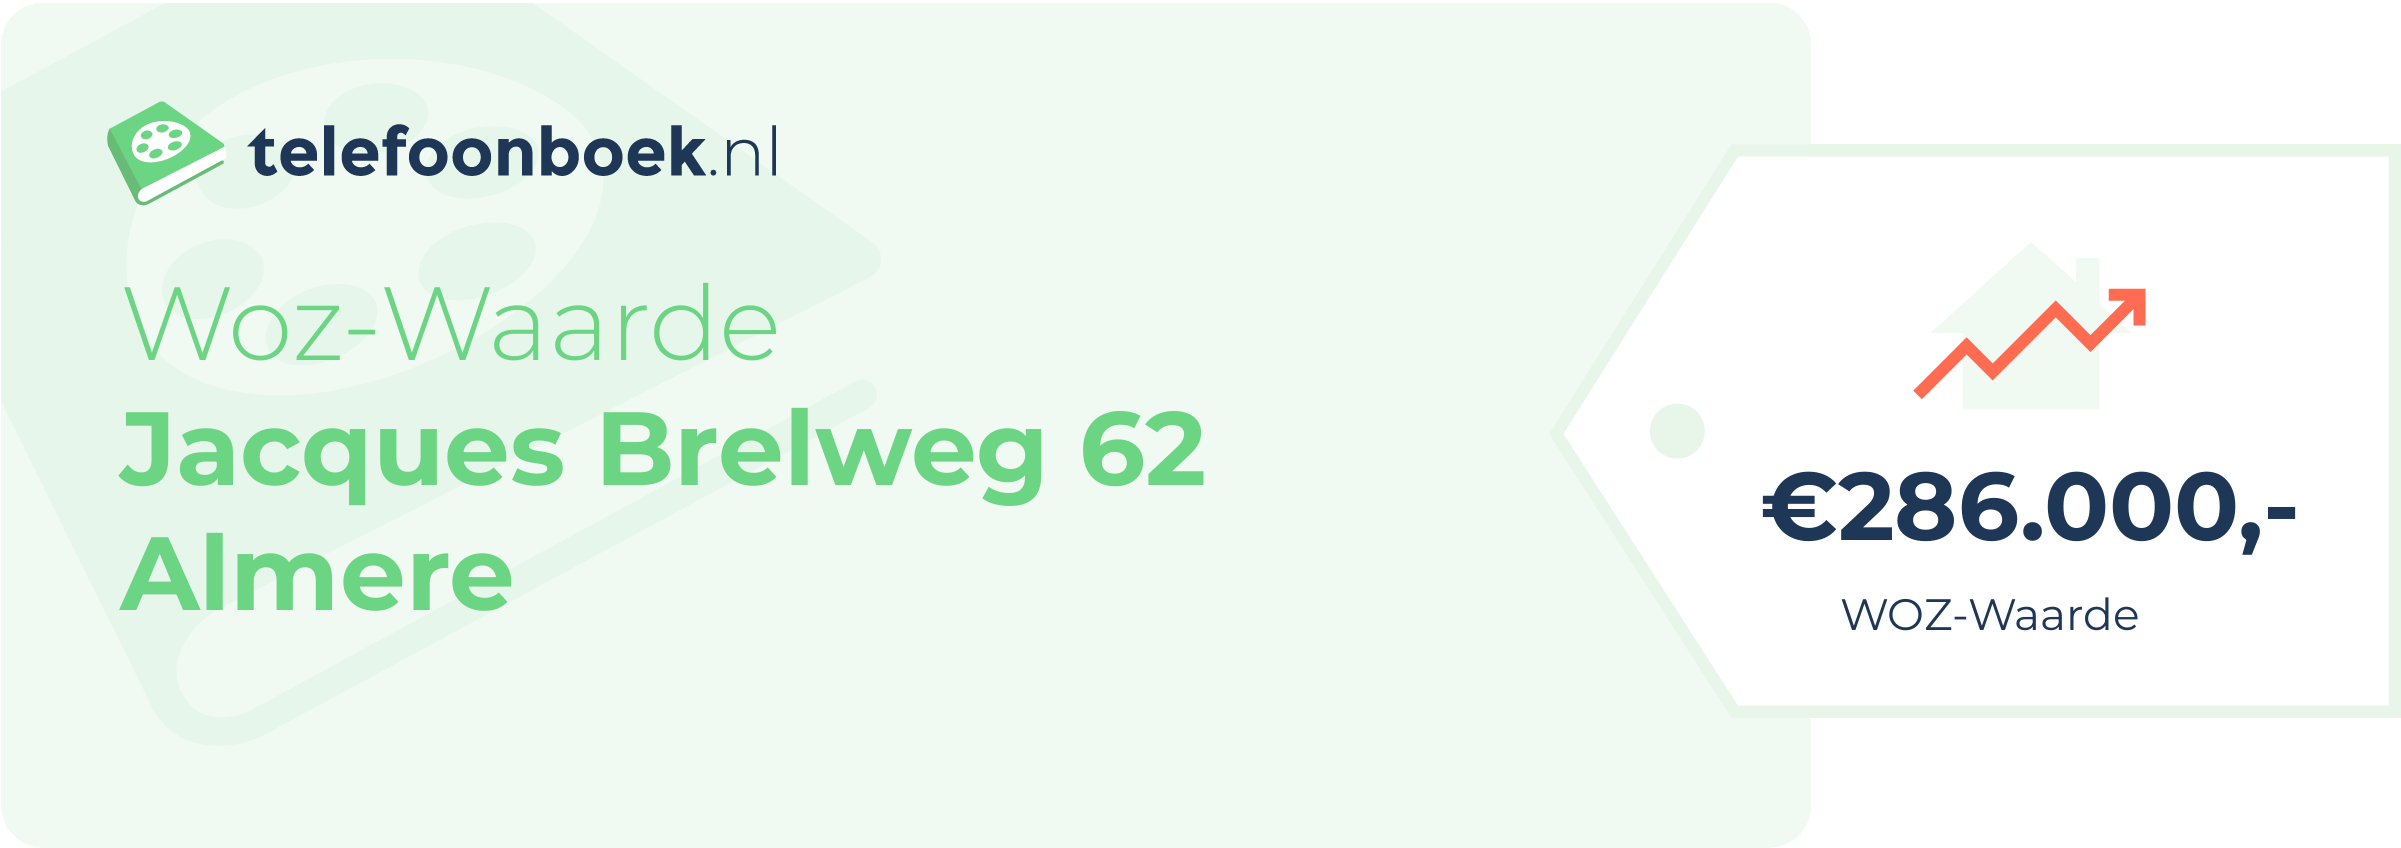 WOZ-waarde Jacques Brelweg 62 Almere